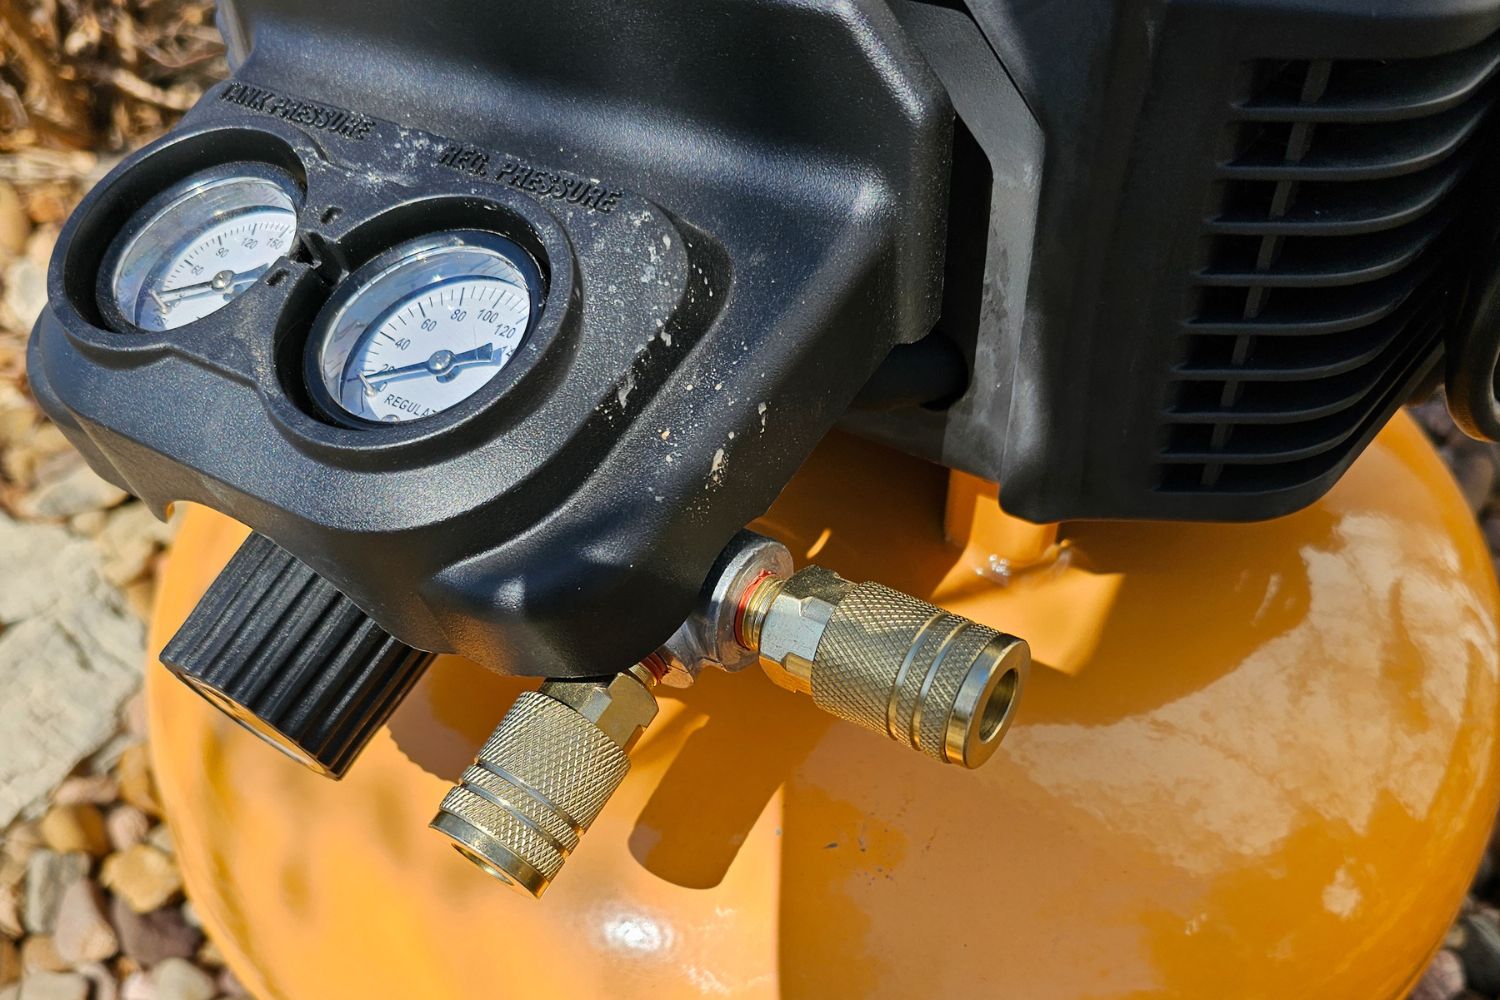 Pressure gauges and hose hookups on the Bostitch Air Compressor.